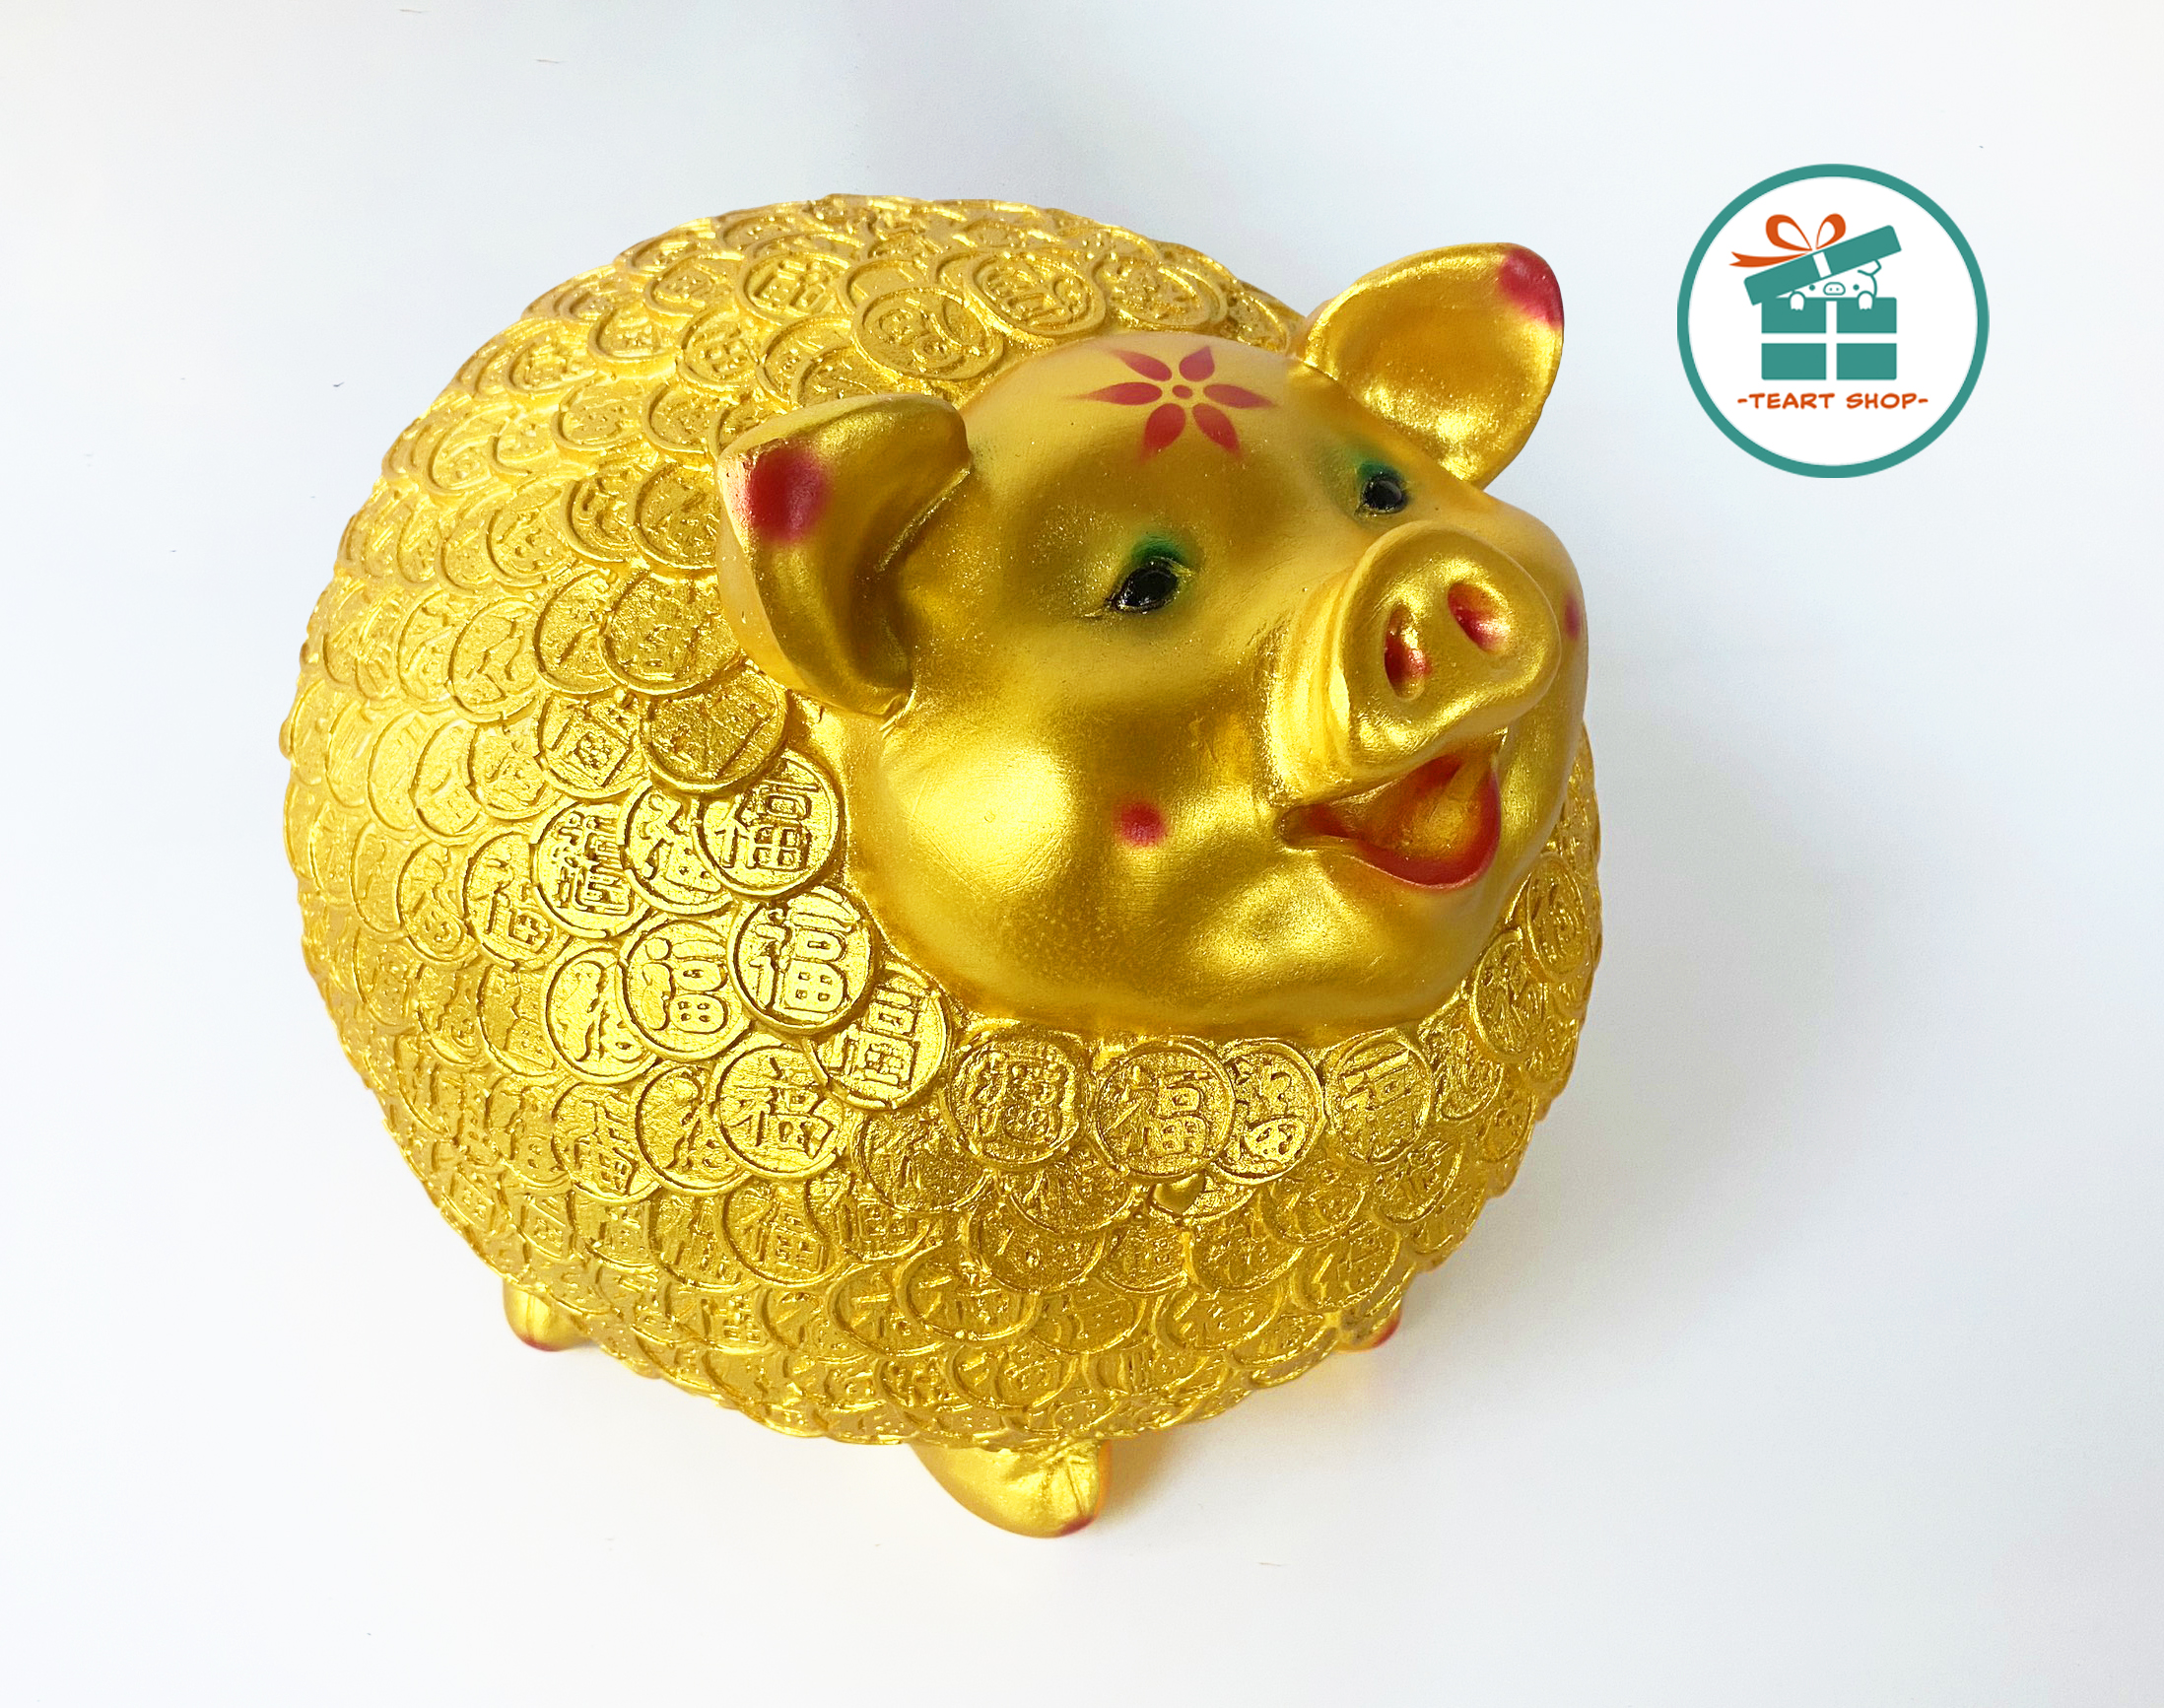 [Teart Shop] Heo đất/lợn đất tiết kiệm Nhím đồng tiền vàng Cute Size lớn 23x23x23 cm